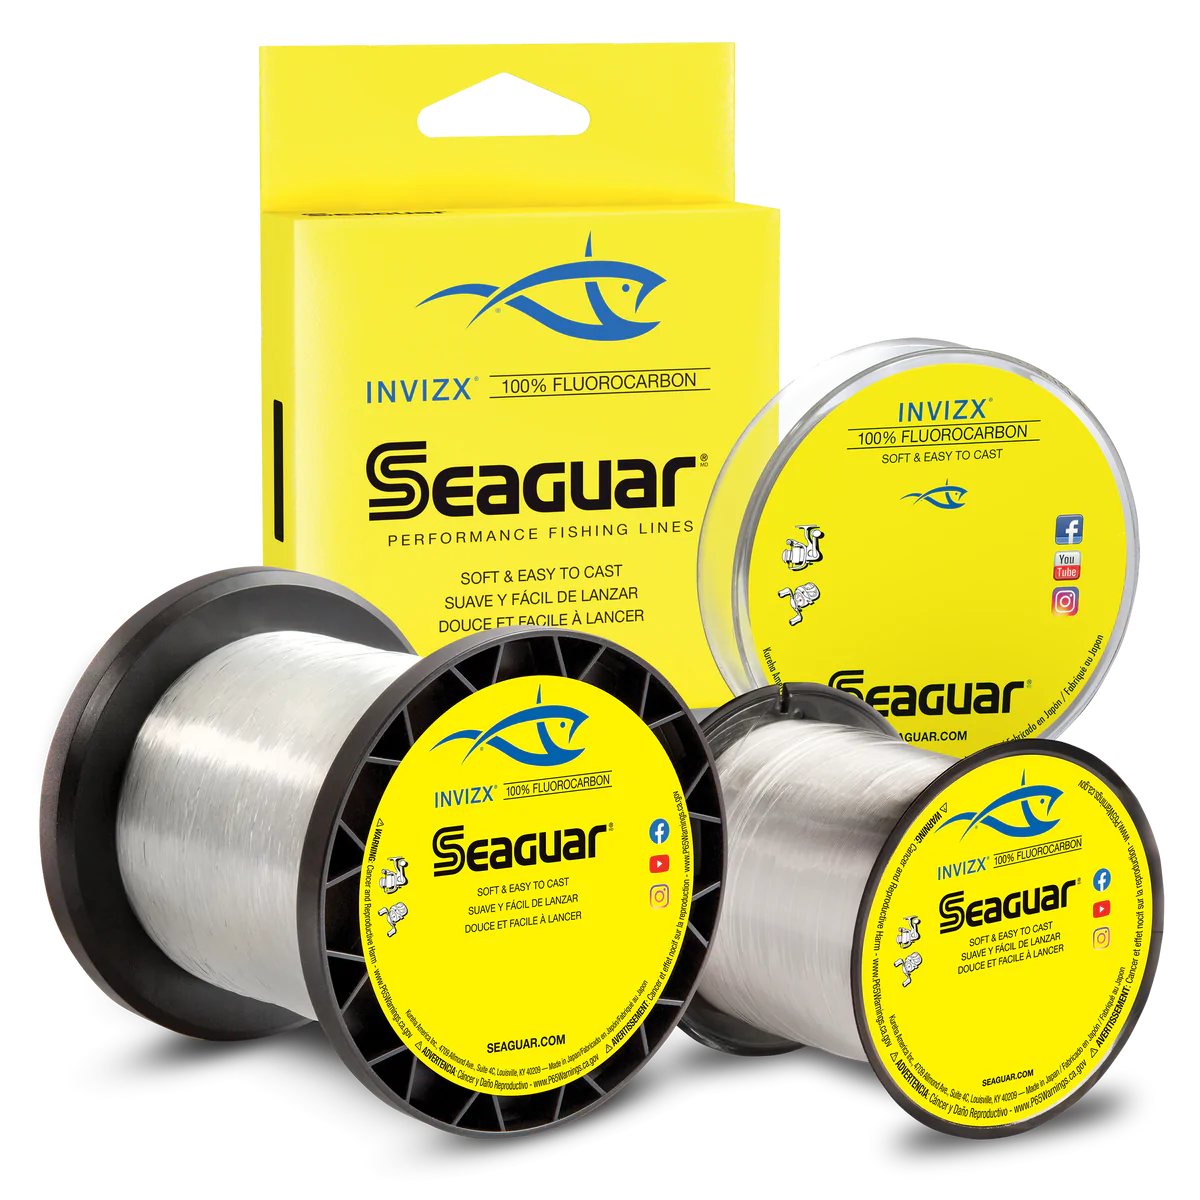 Seaguar Invizx Fluorocarbon Line